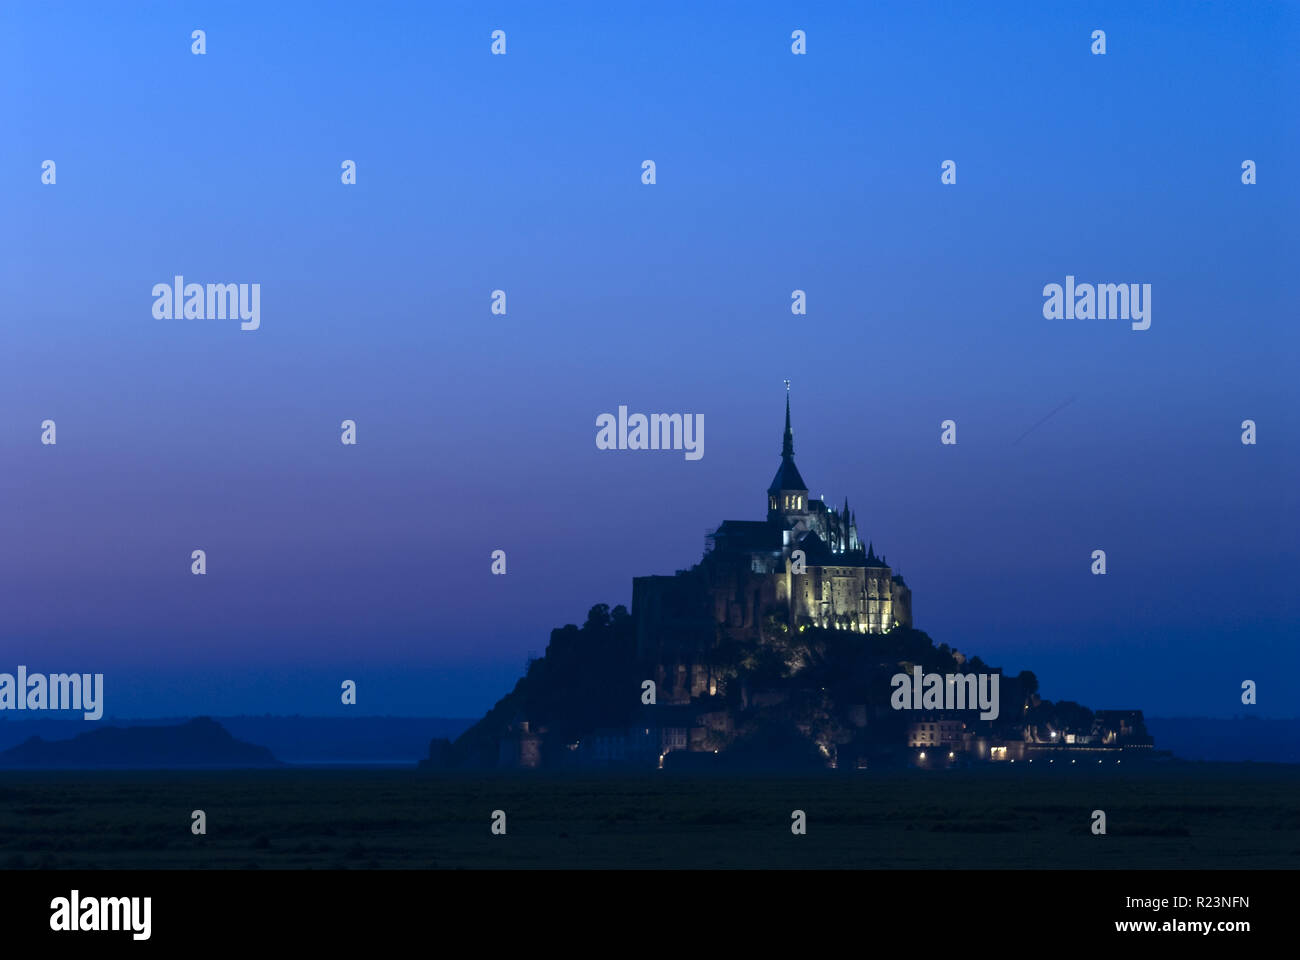 Nacht Blick auf den Mont-Saint-Michel (Le Mont-Saint-Michel), eine Gemeinde in der Normandie, Frankreich für seine Kloster- und Befestigungsanlagen bekannt. Stockfoto